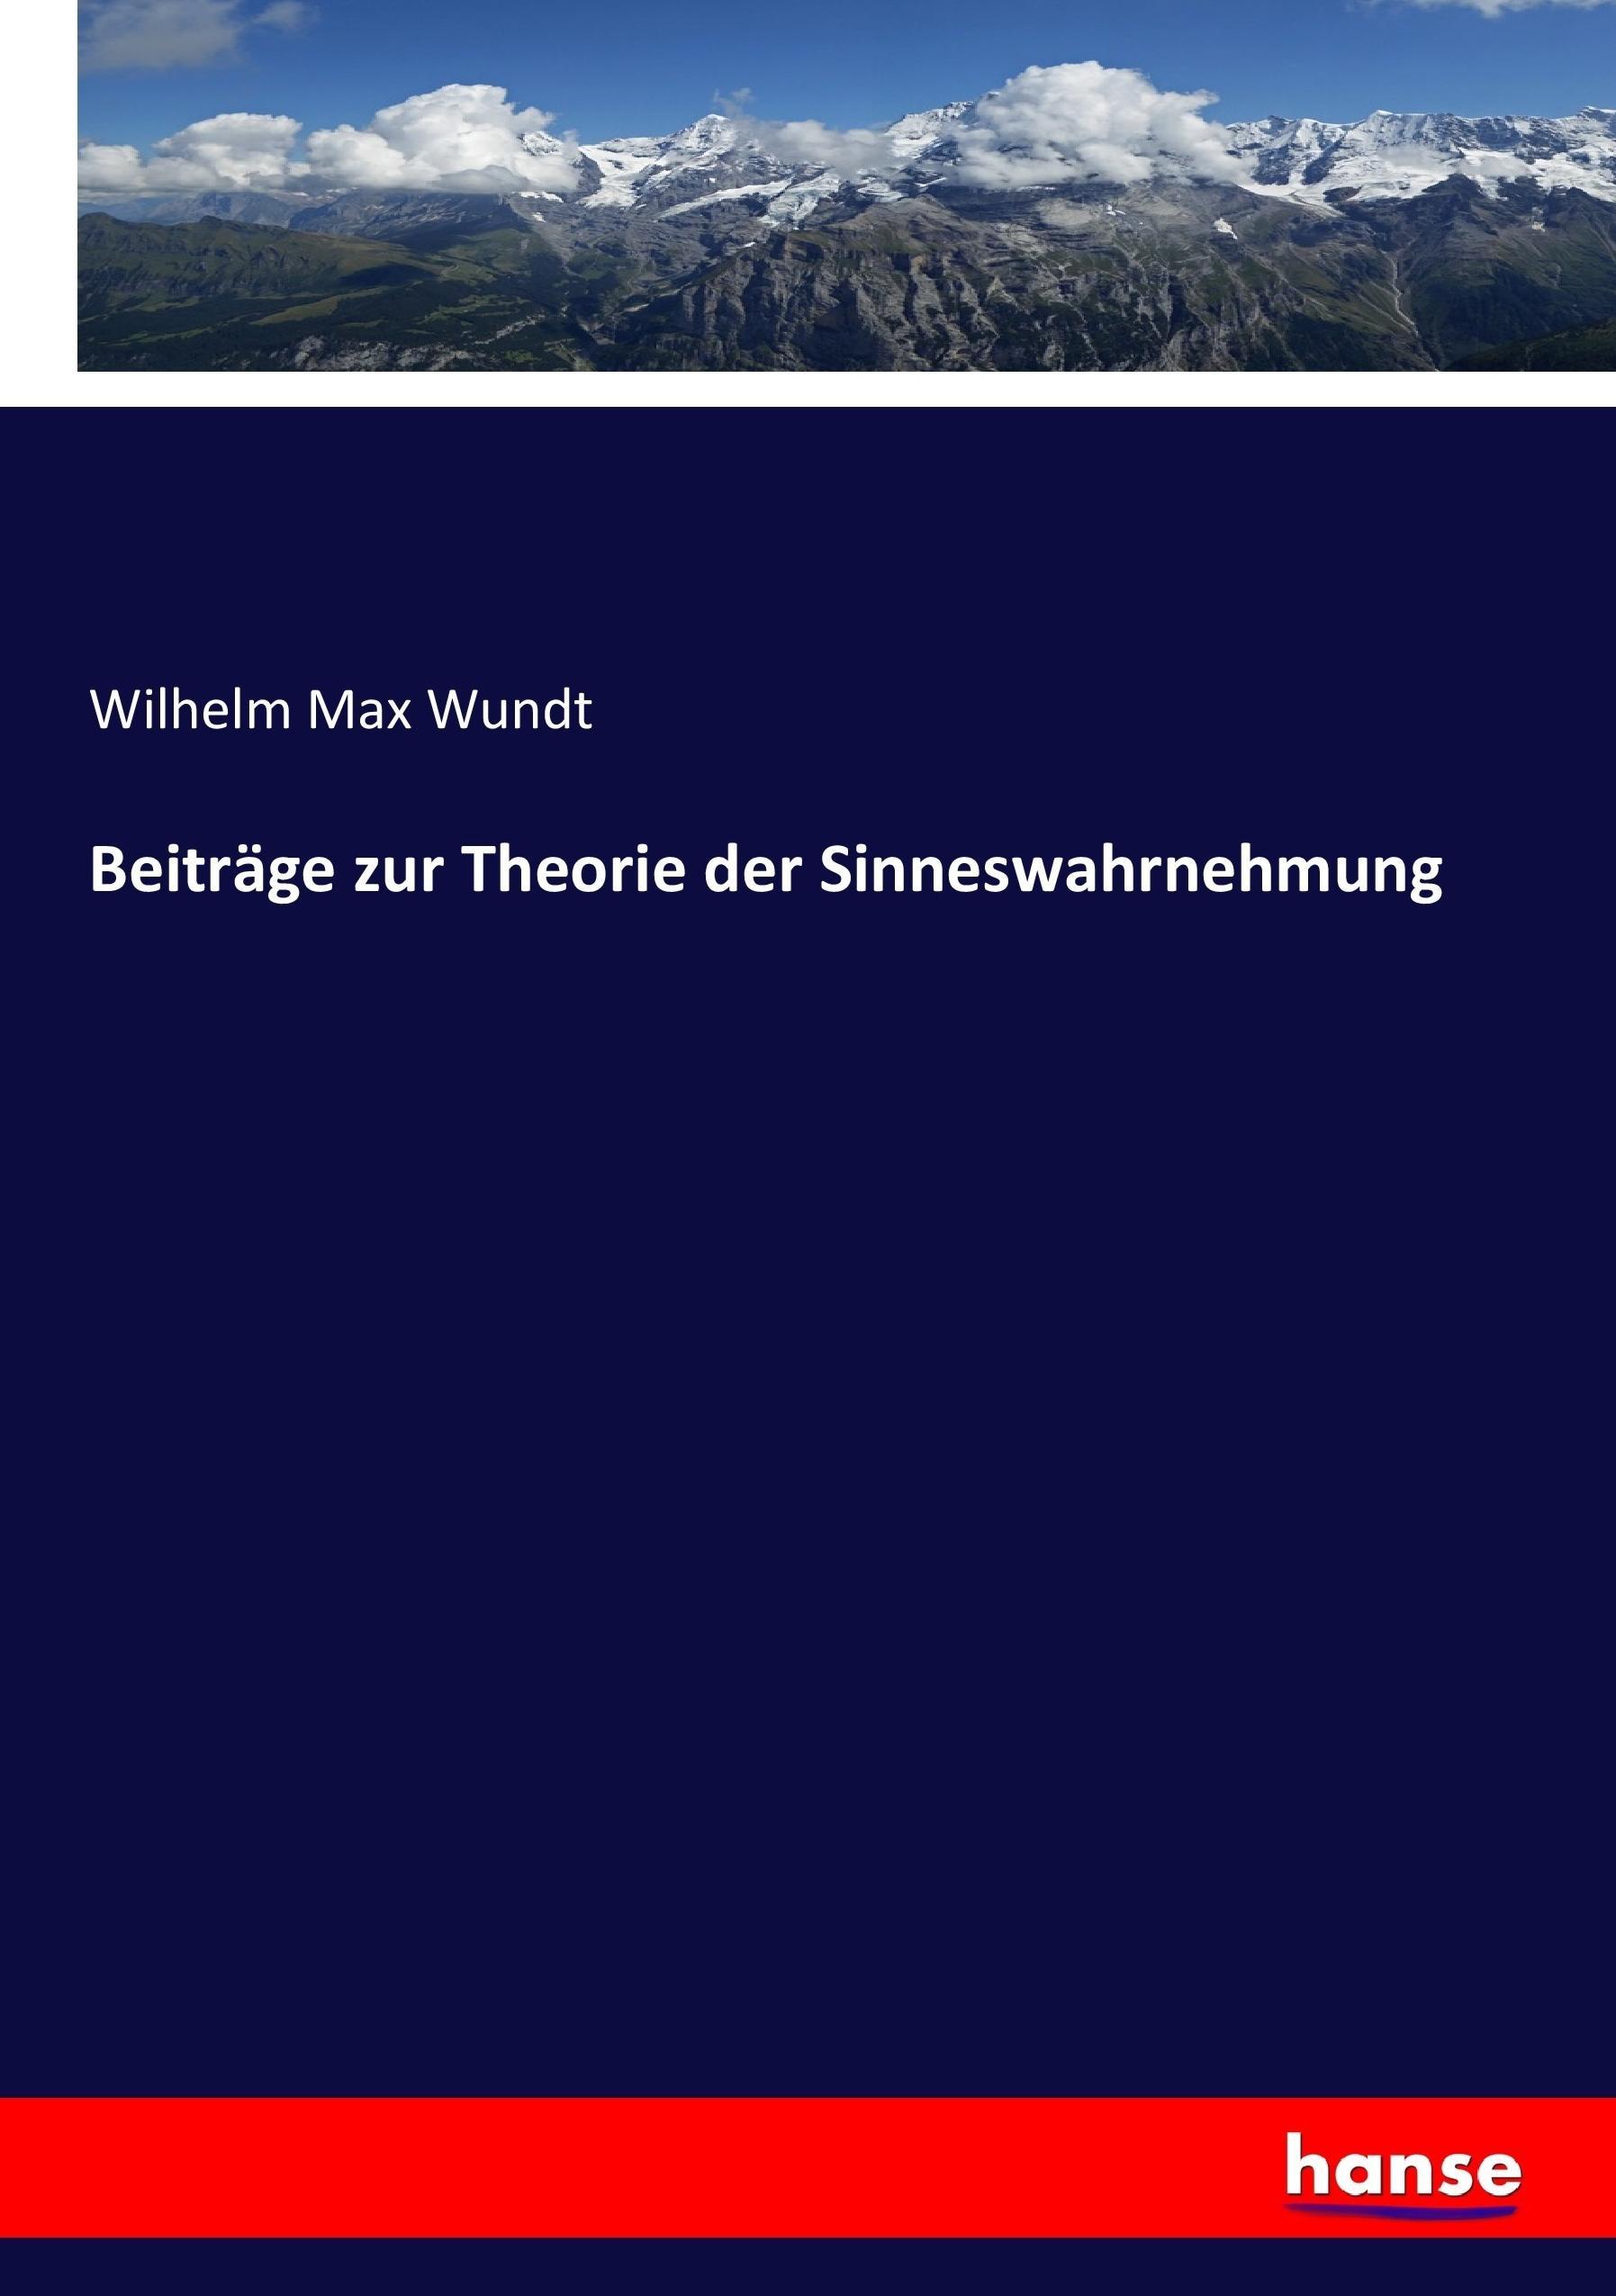 Beiträge zur Theorie der Sinneswahrnehmung / Wilhelm Max Wundt / Taschenbuch / Paperback / 488 S. / Deutsch / 2017 / hansebooks / EAN 9783744624237 - Wundt, Wilhelm Max